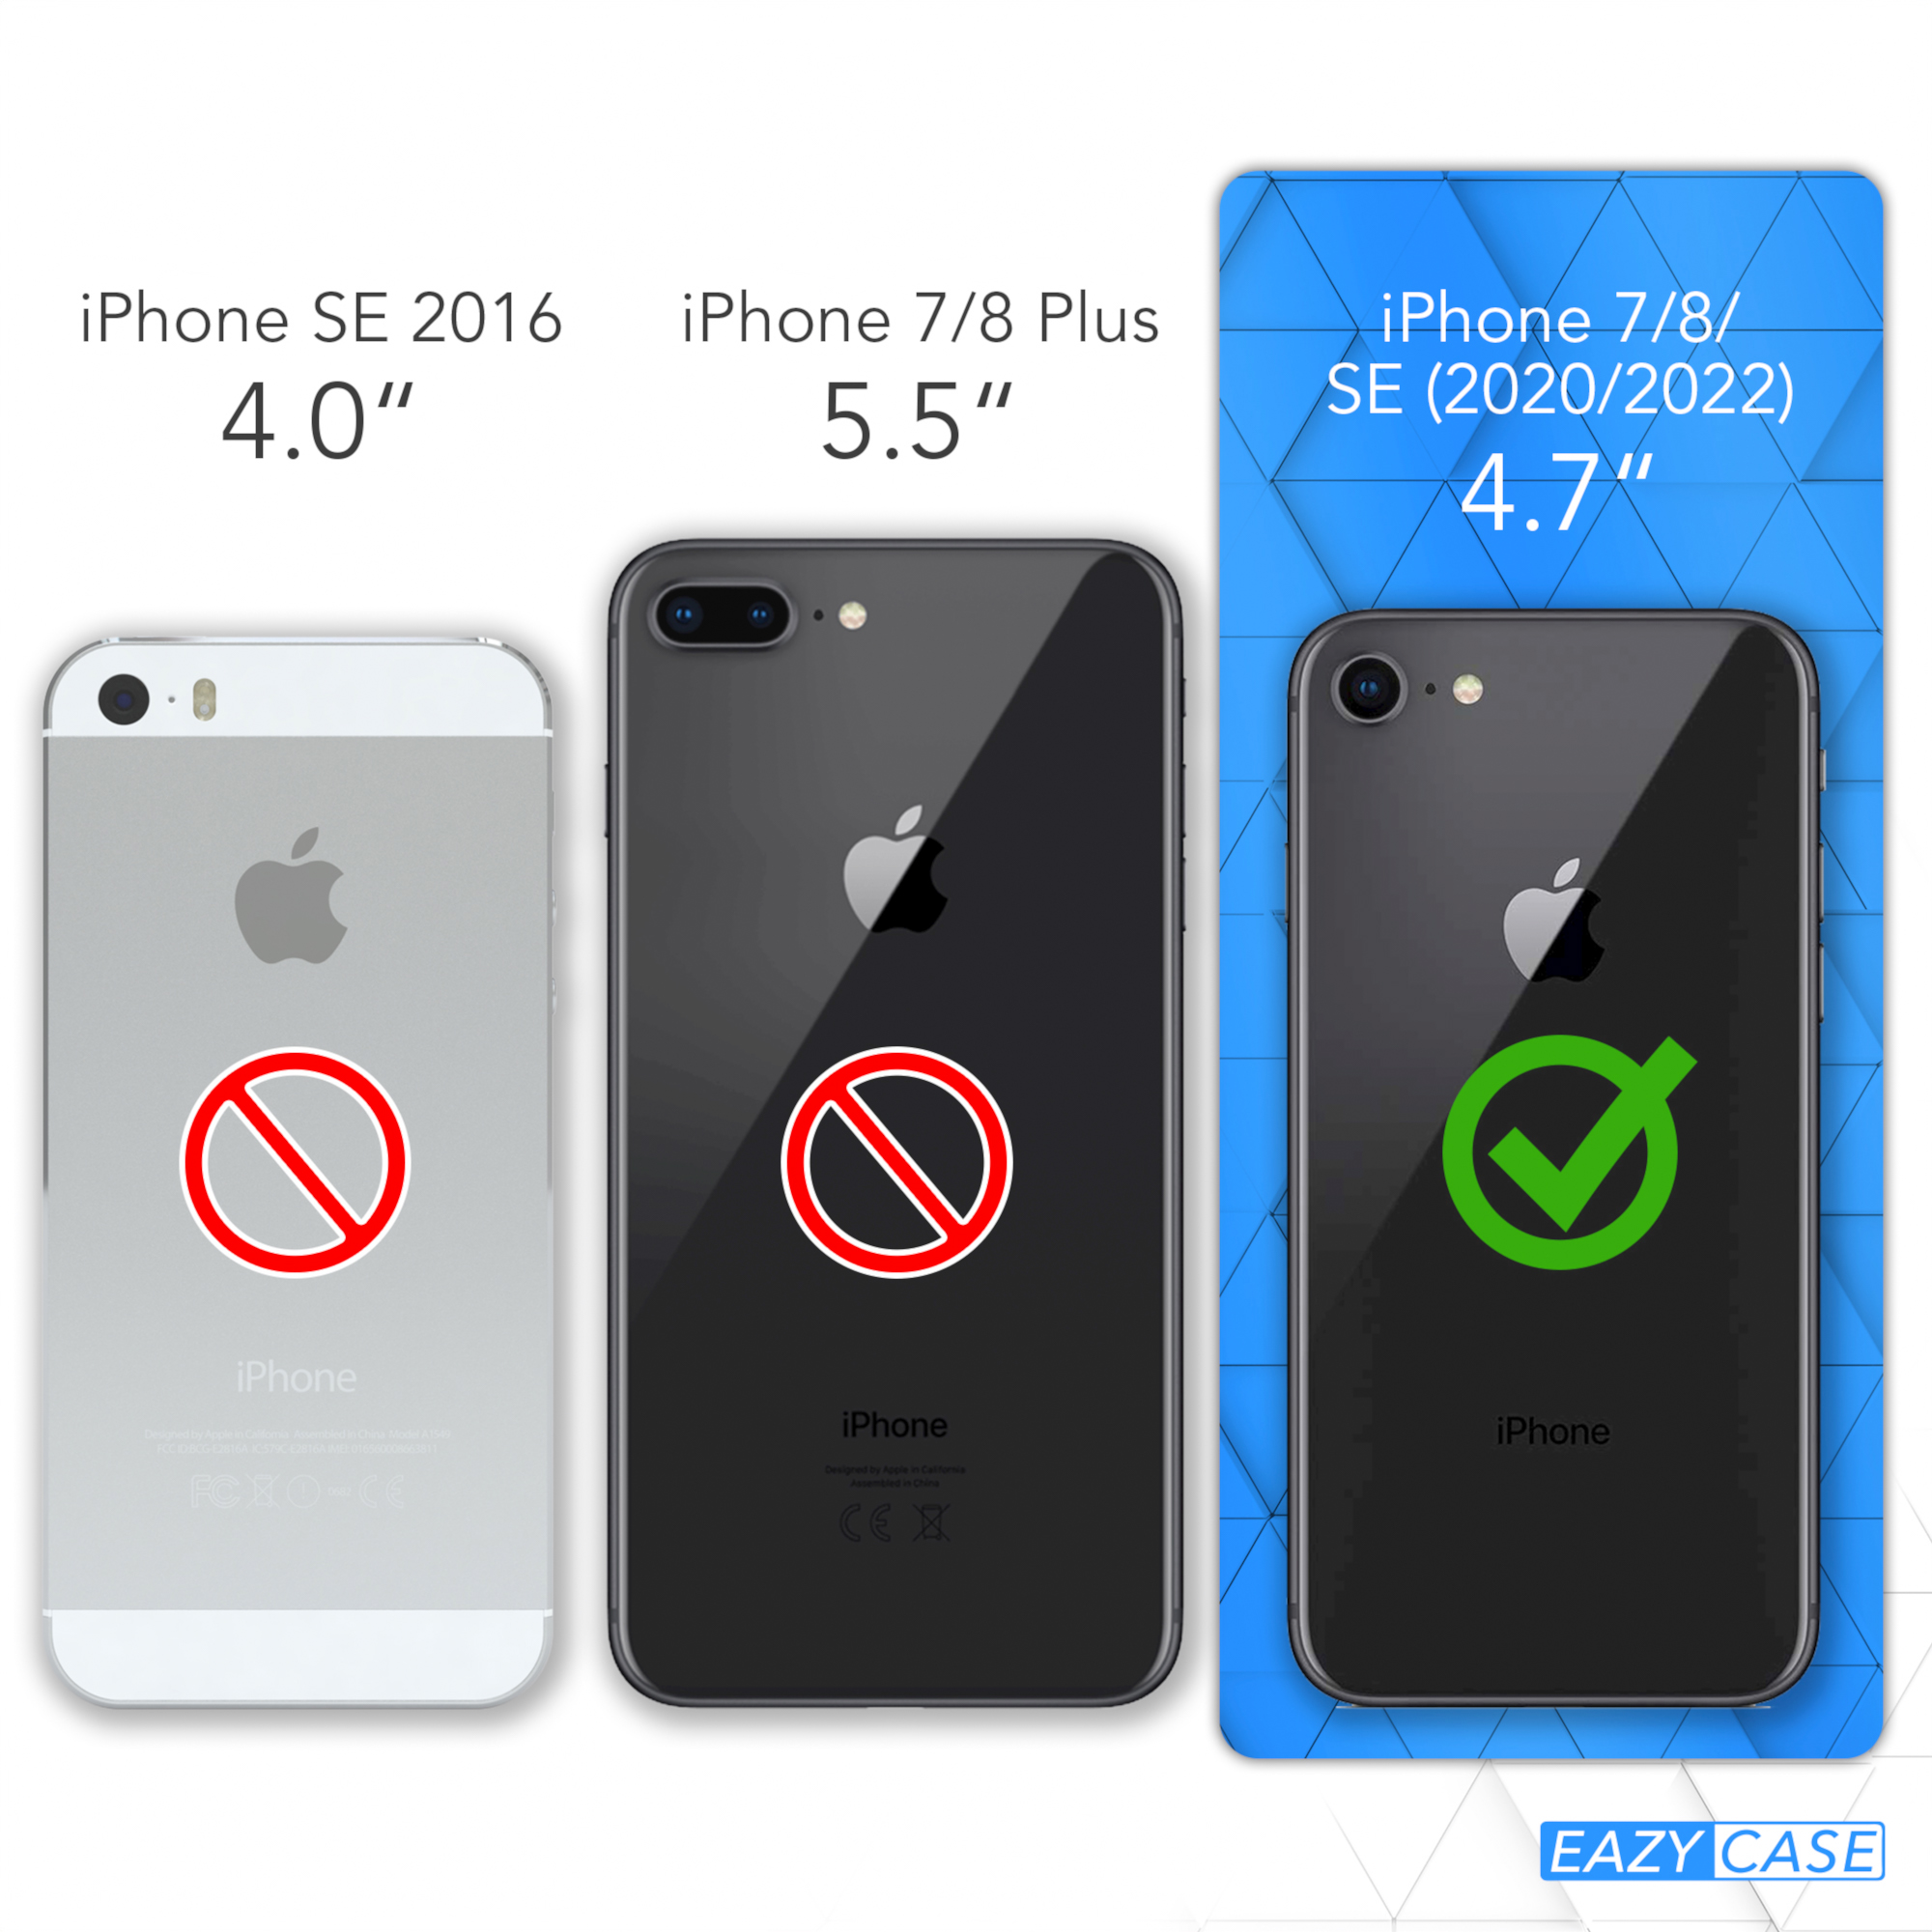 CASE Beere EAZY iPhone Handykette / Umhängetasche, Burgundy SE Karabiner, / mit 7 SE 2022 2020, 8, / Rot Apple, Runde iPhone